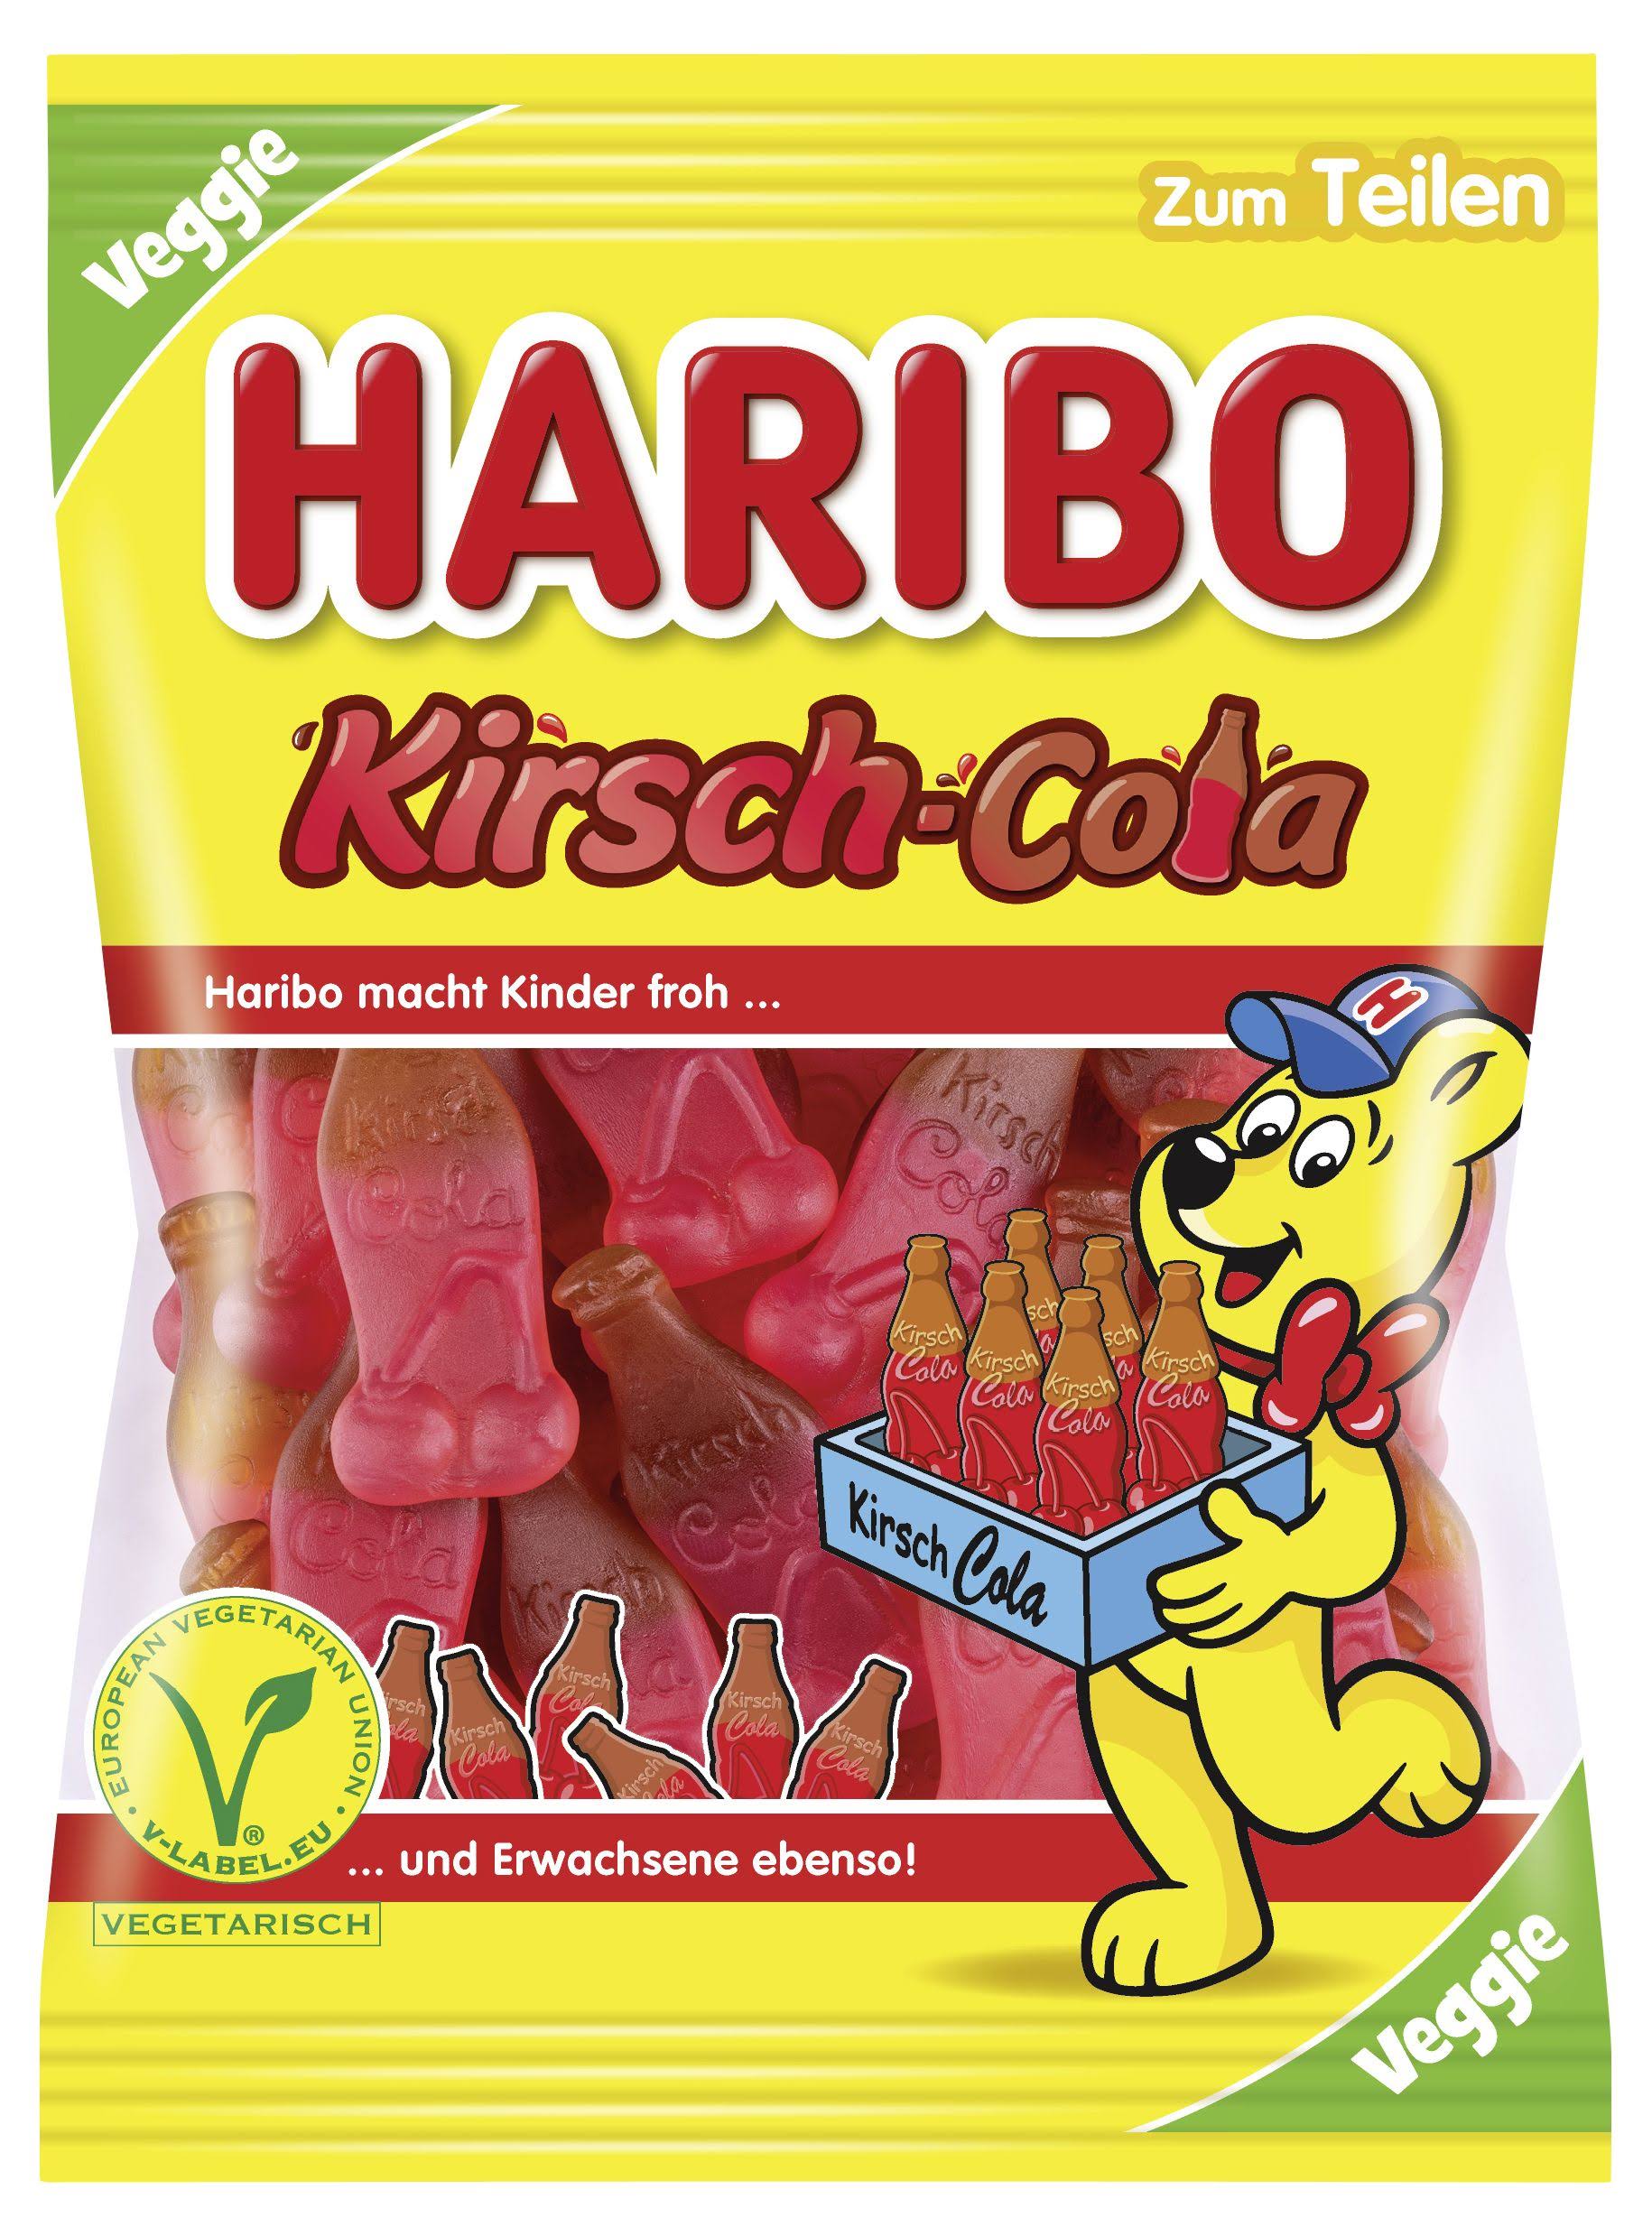 Haribo Cherry Cola - 200g